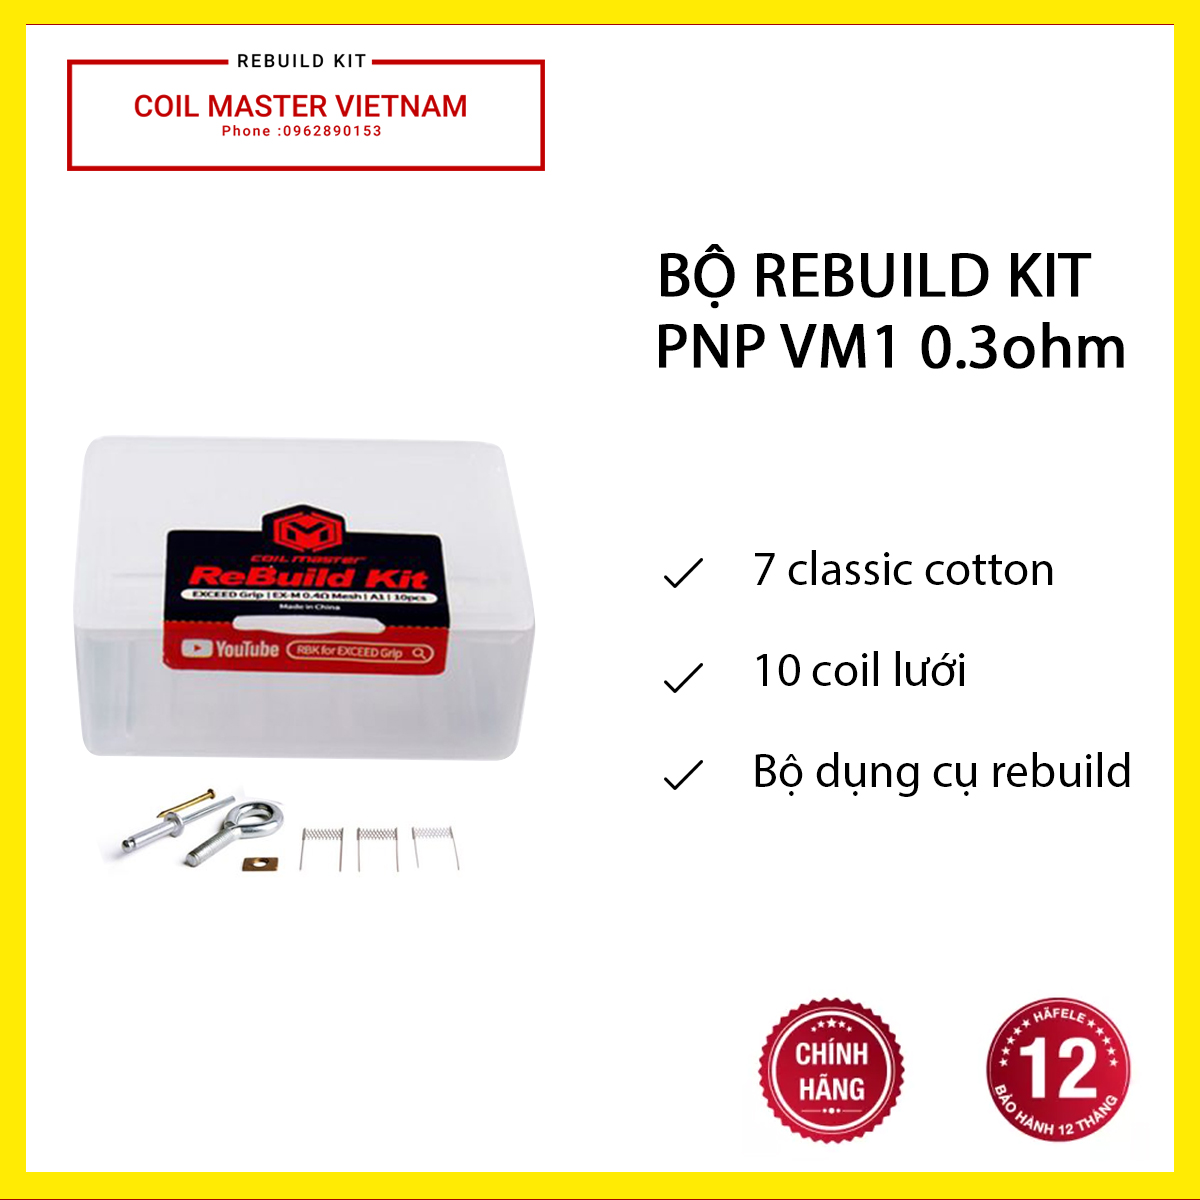 Bộ Rebuild Kit PNP VM1 0.3ohm -  Rebuild occ 0.3ohm coil lưới  - Hàng chính hãng